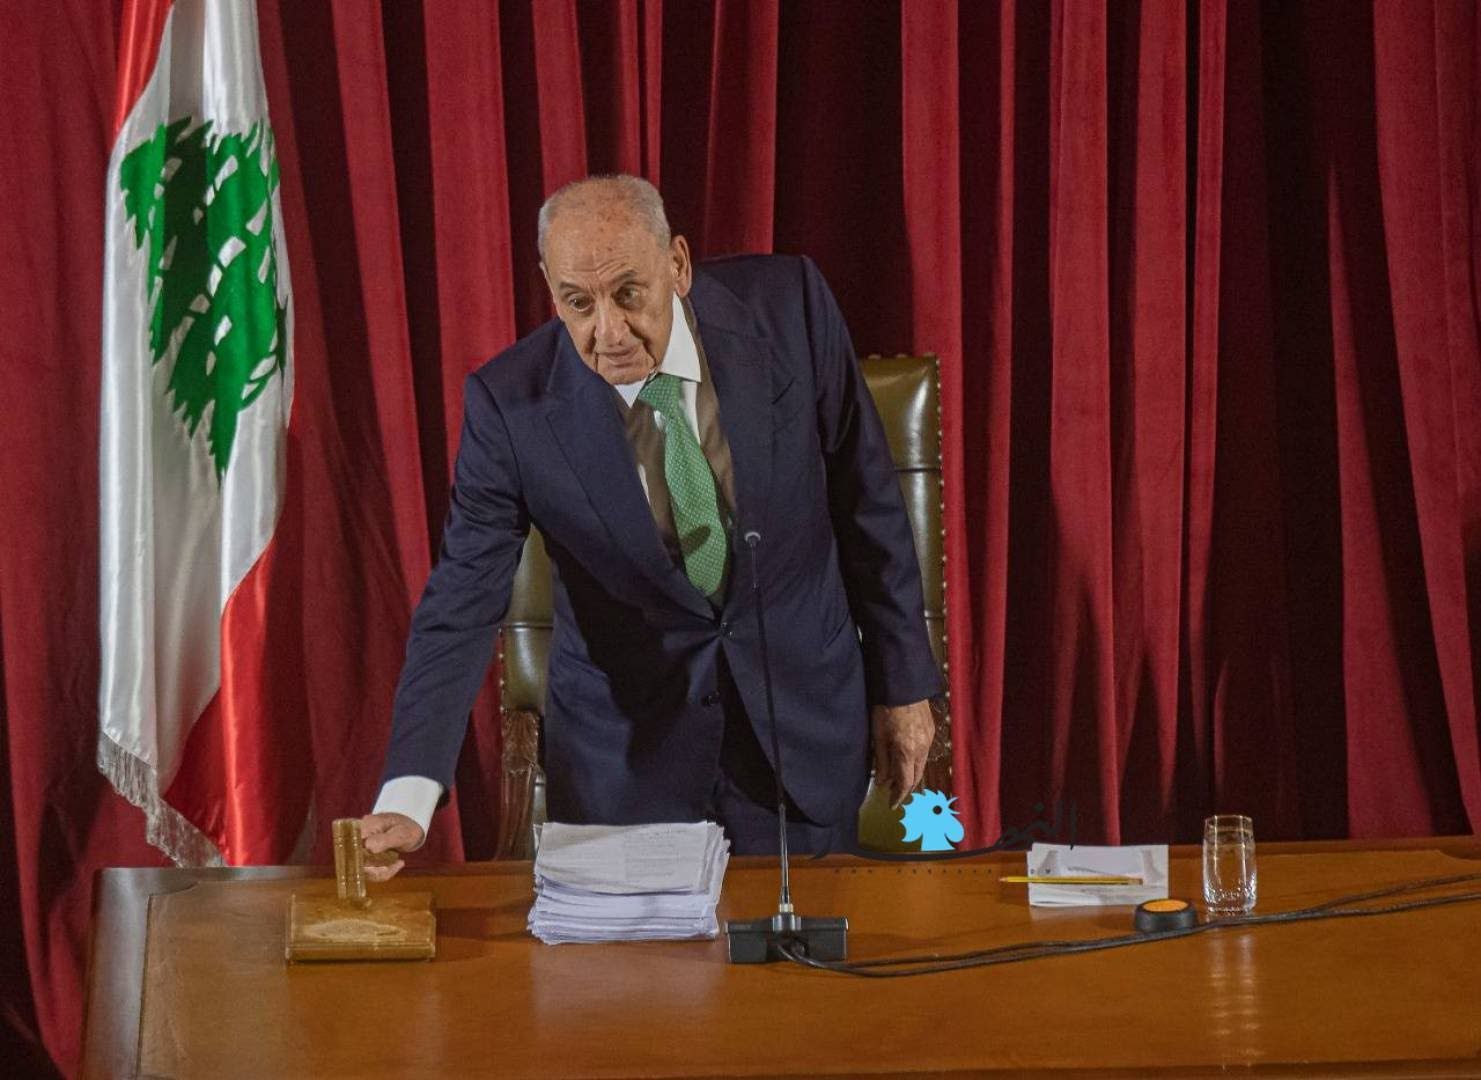 كلمة للرئيس برّي غداً الجمعة حول آخر المستجدات السياسية في لبنان والمنطقة